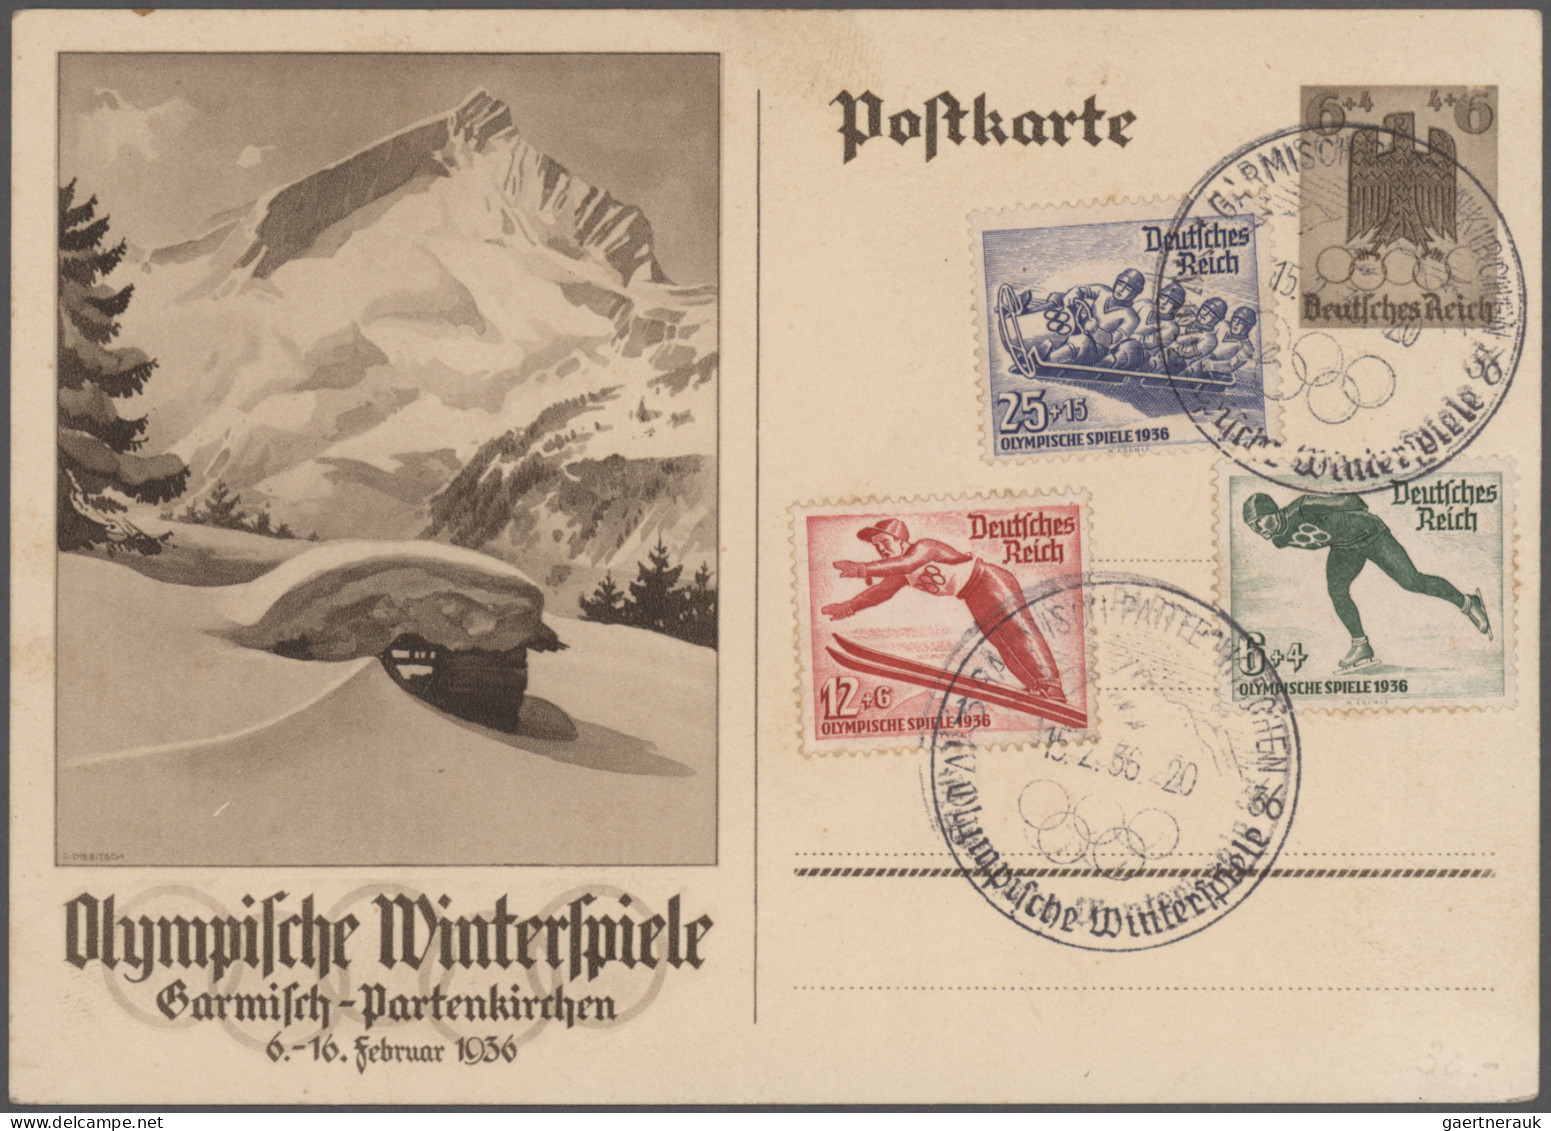 Deutsches Reich - Ganzsachen: 1872/1943, vielseitige Partie von ca. 215 gebrauch